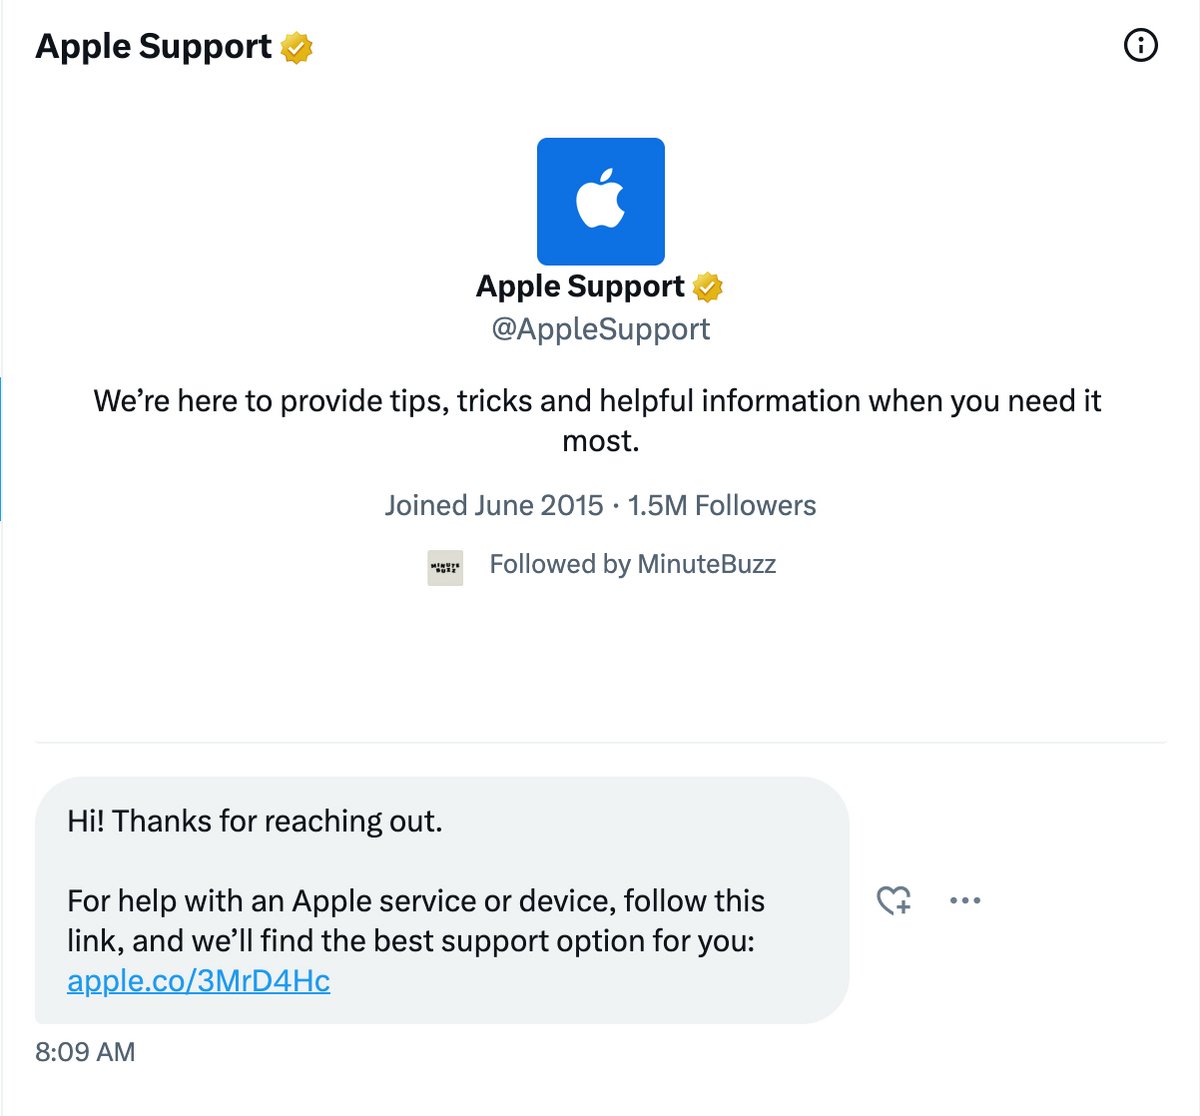 Le message automatique envoyé par Apple à tous ceux souhaitant la contacter en message privé sur X.com ©️ Apple Support / X.com